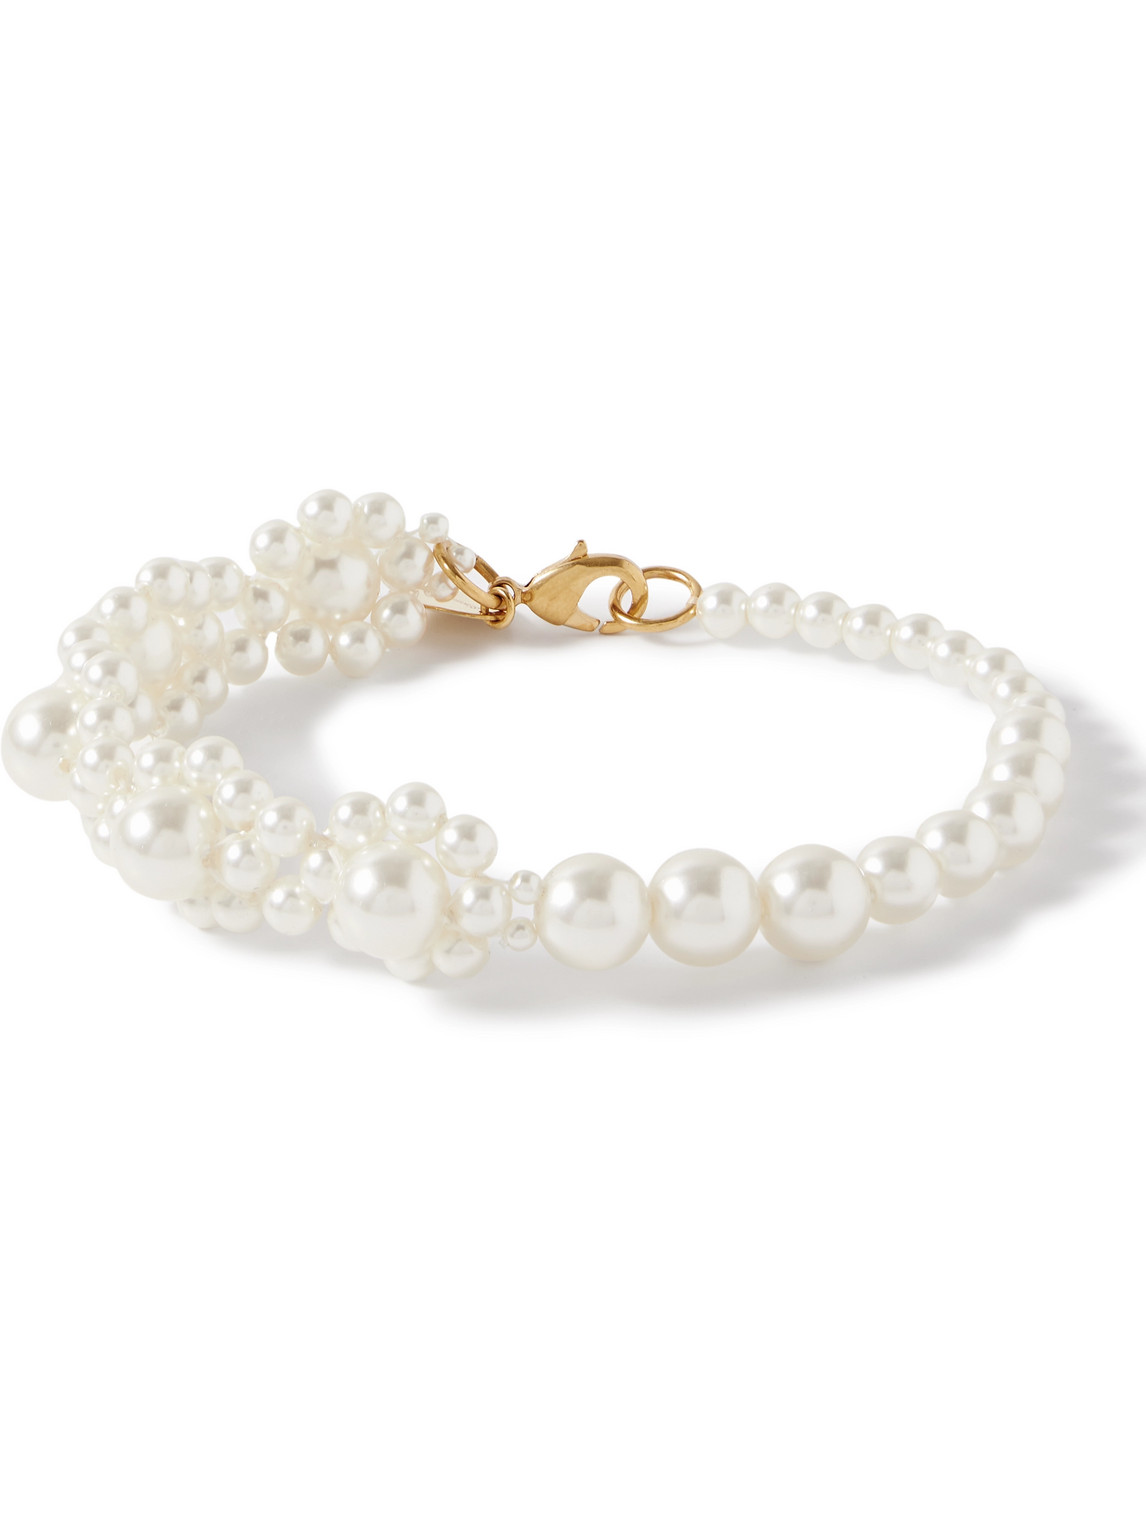 Daisy Gold-Tone Faux Pearl Bracelet